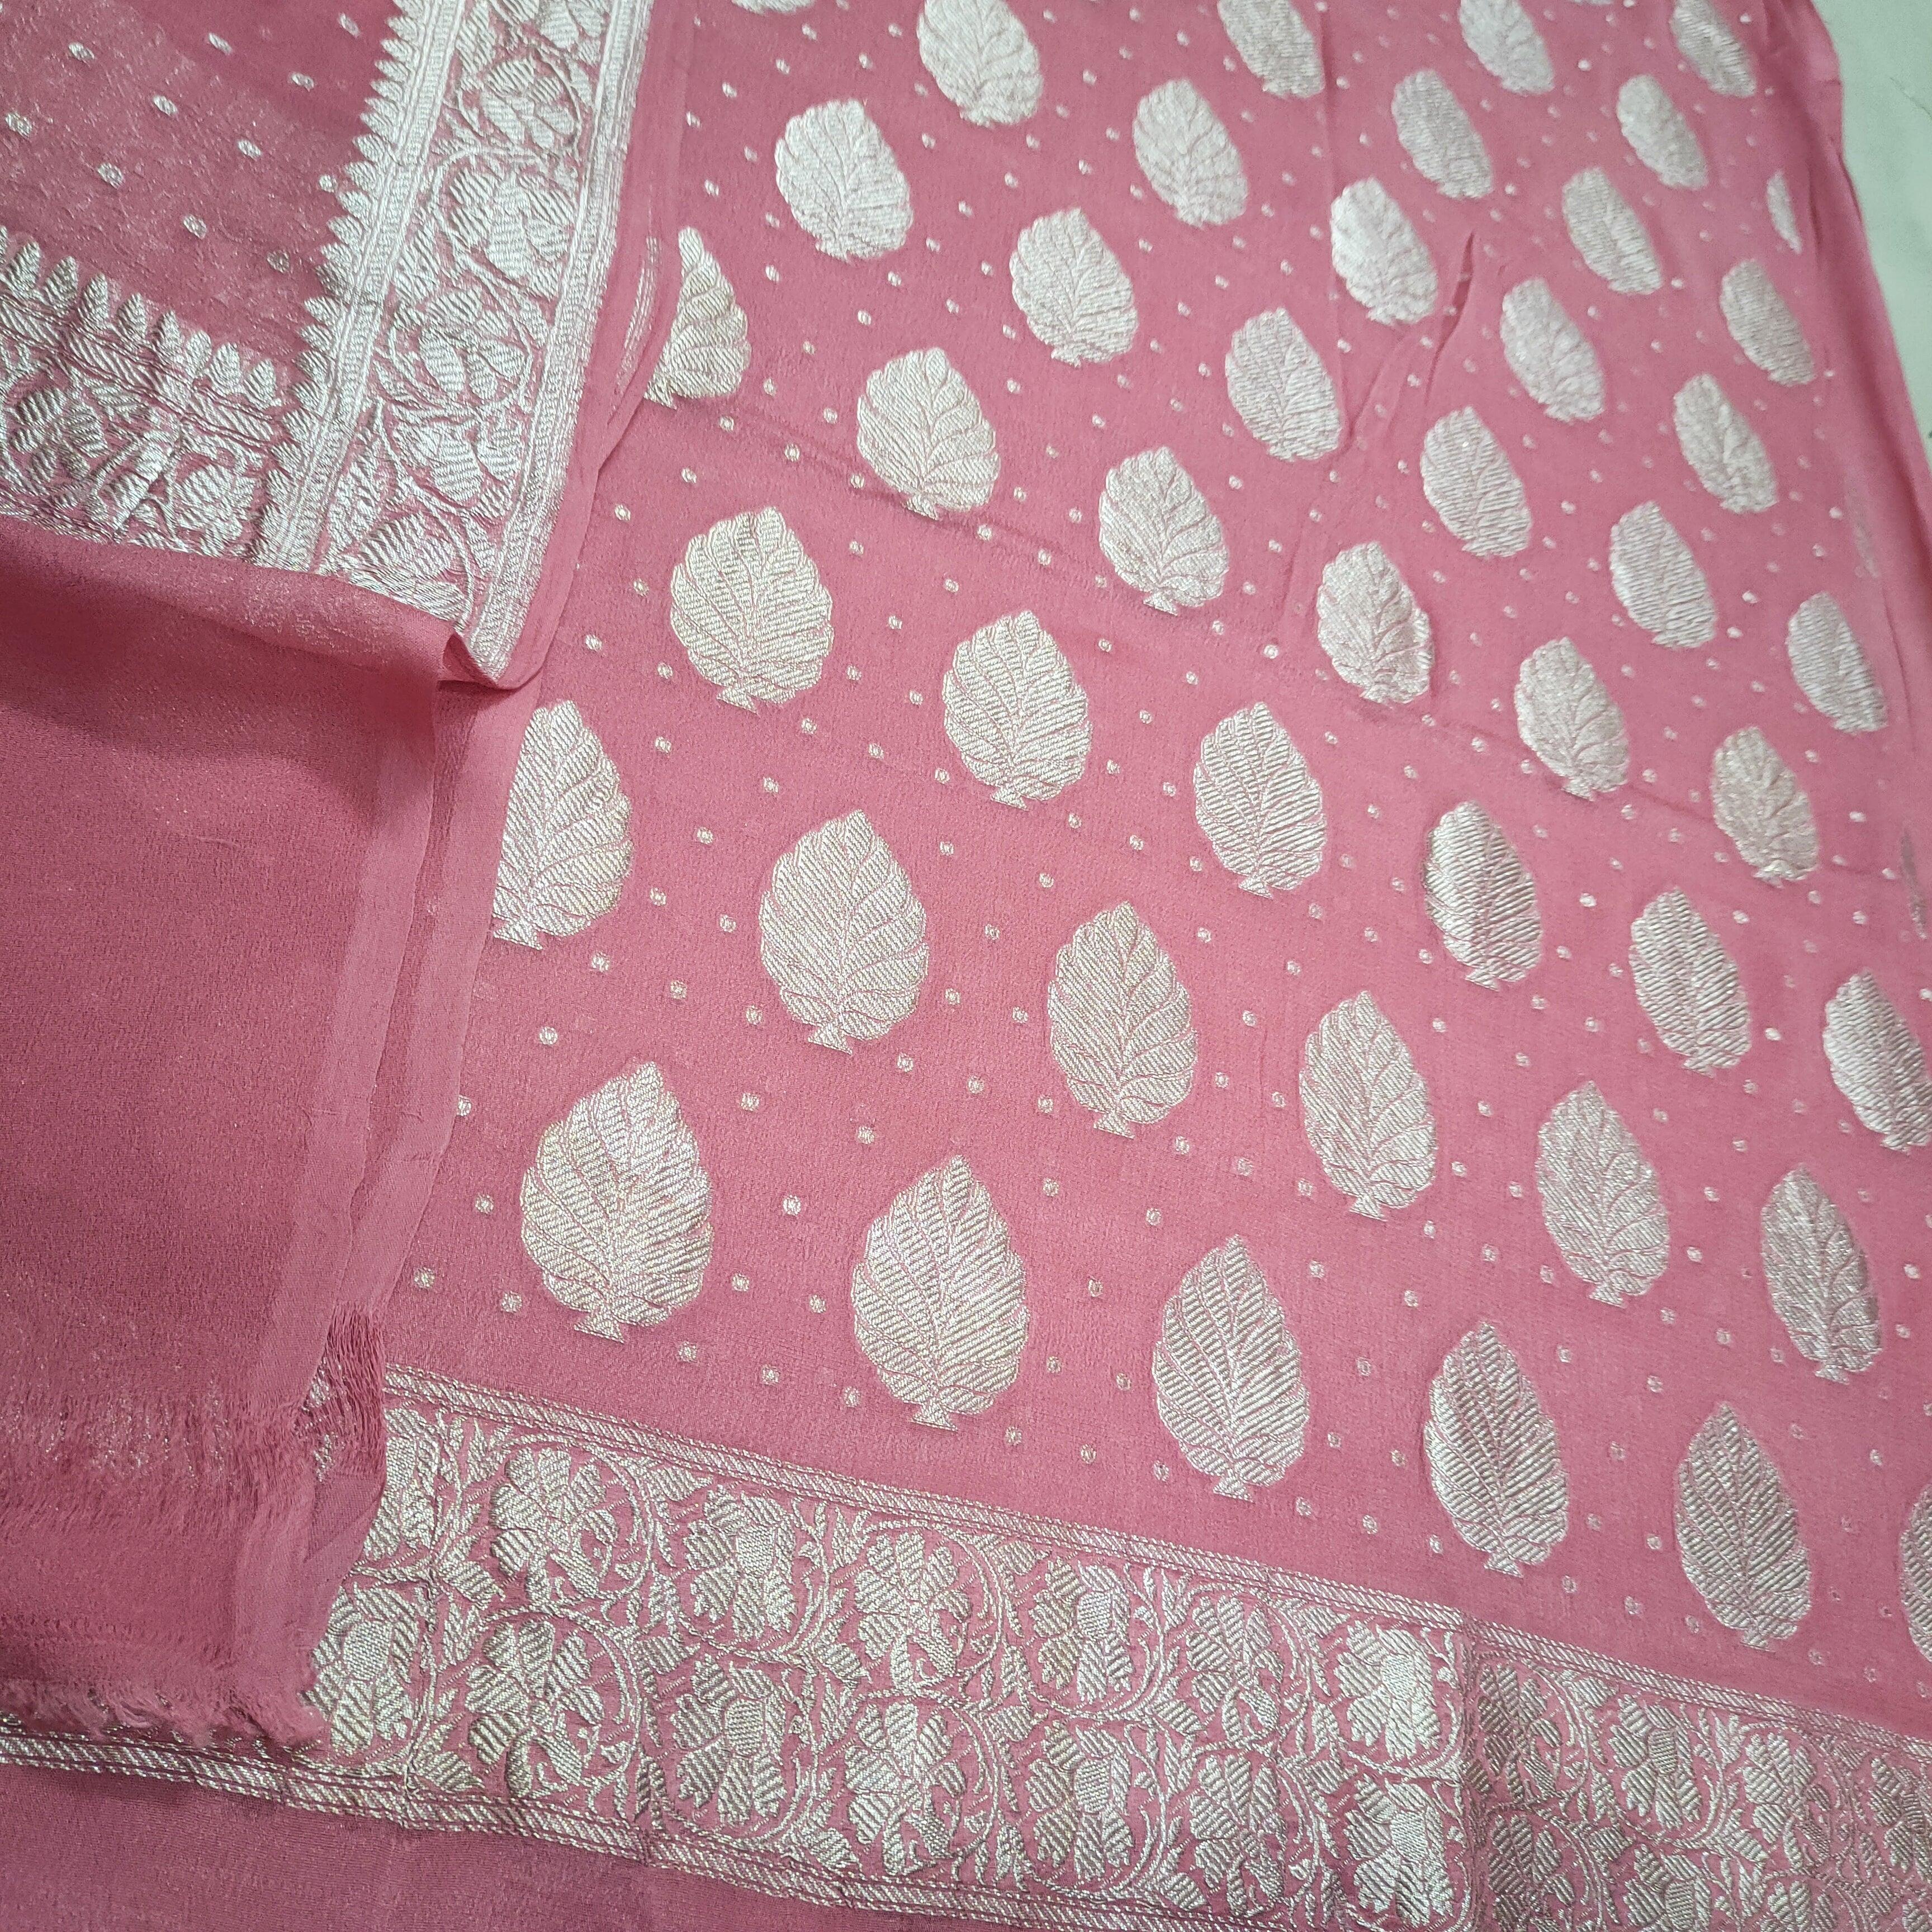 Pure Khaddi chiffon Banarasi suit #silk #khaddi #pure 9044703519 - YouTube